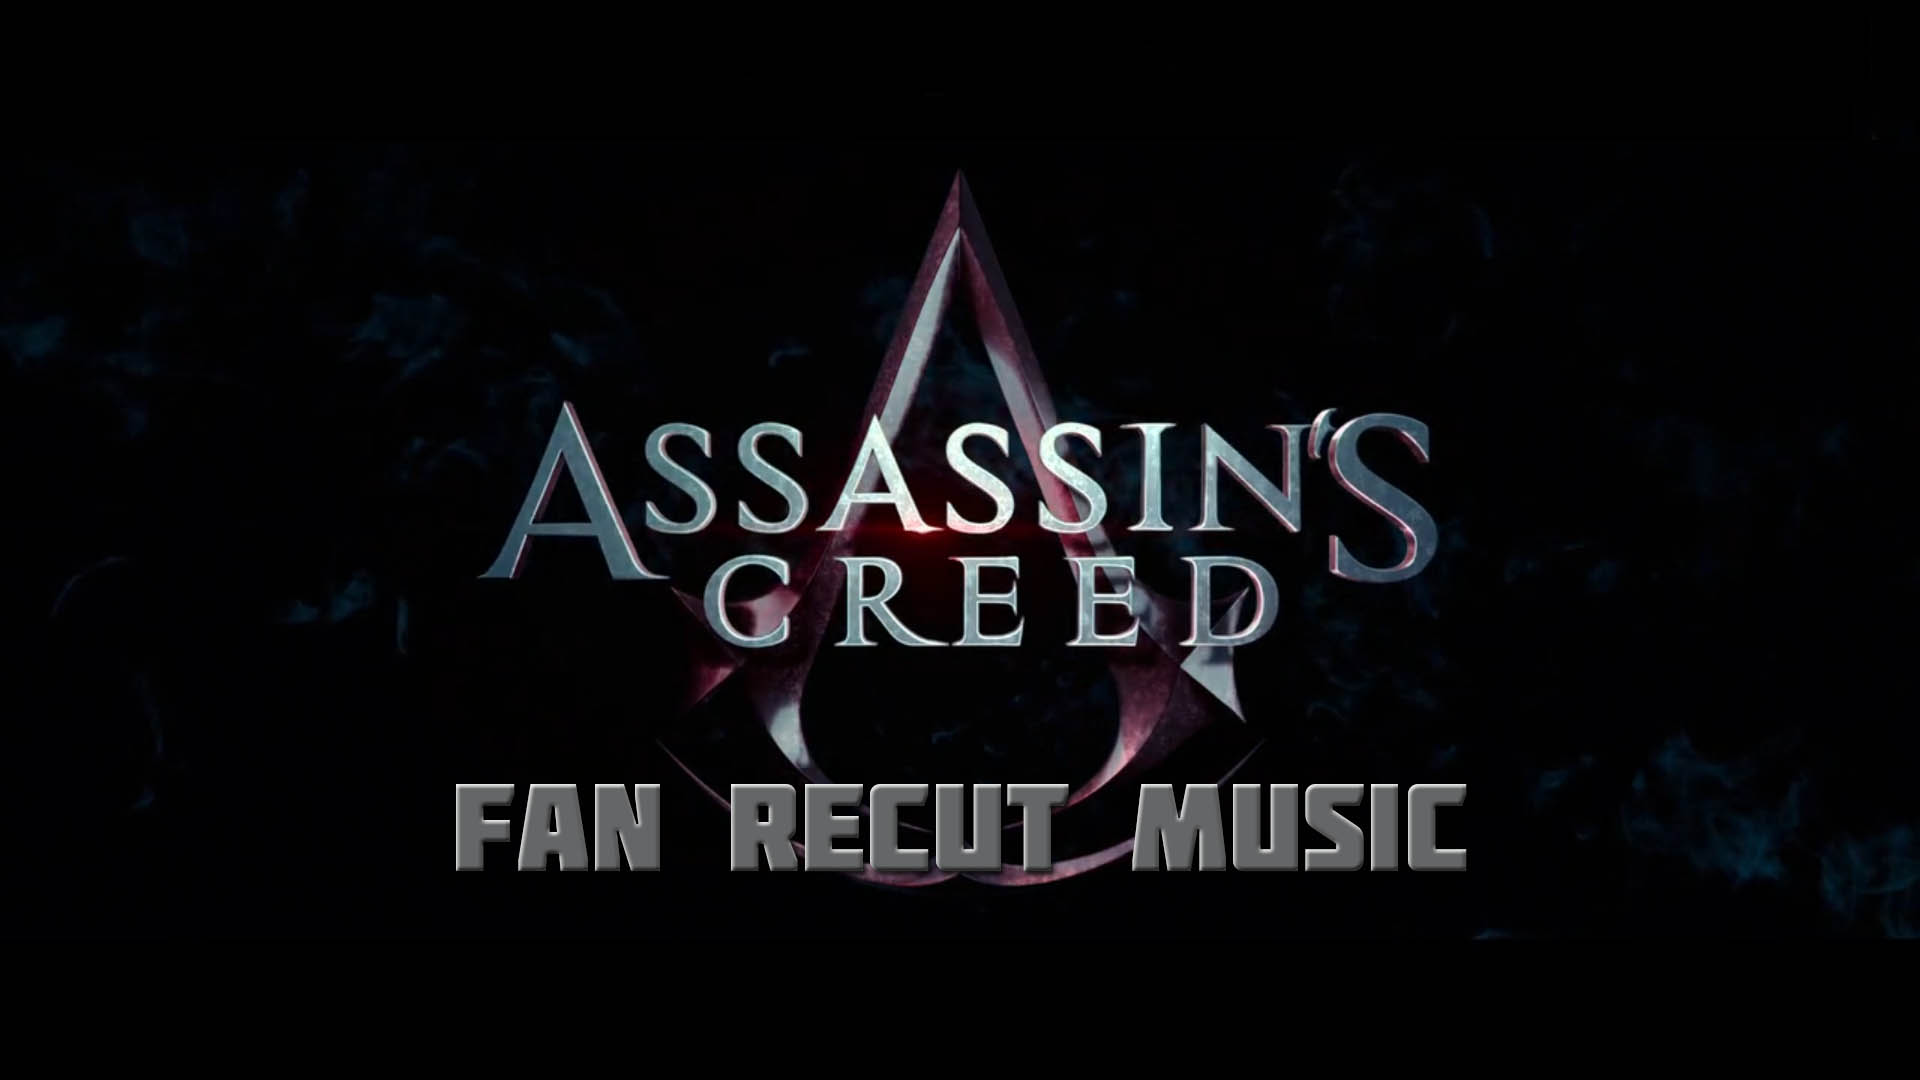 Assasins Creed” (Fan Recut Music)